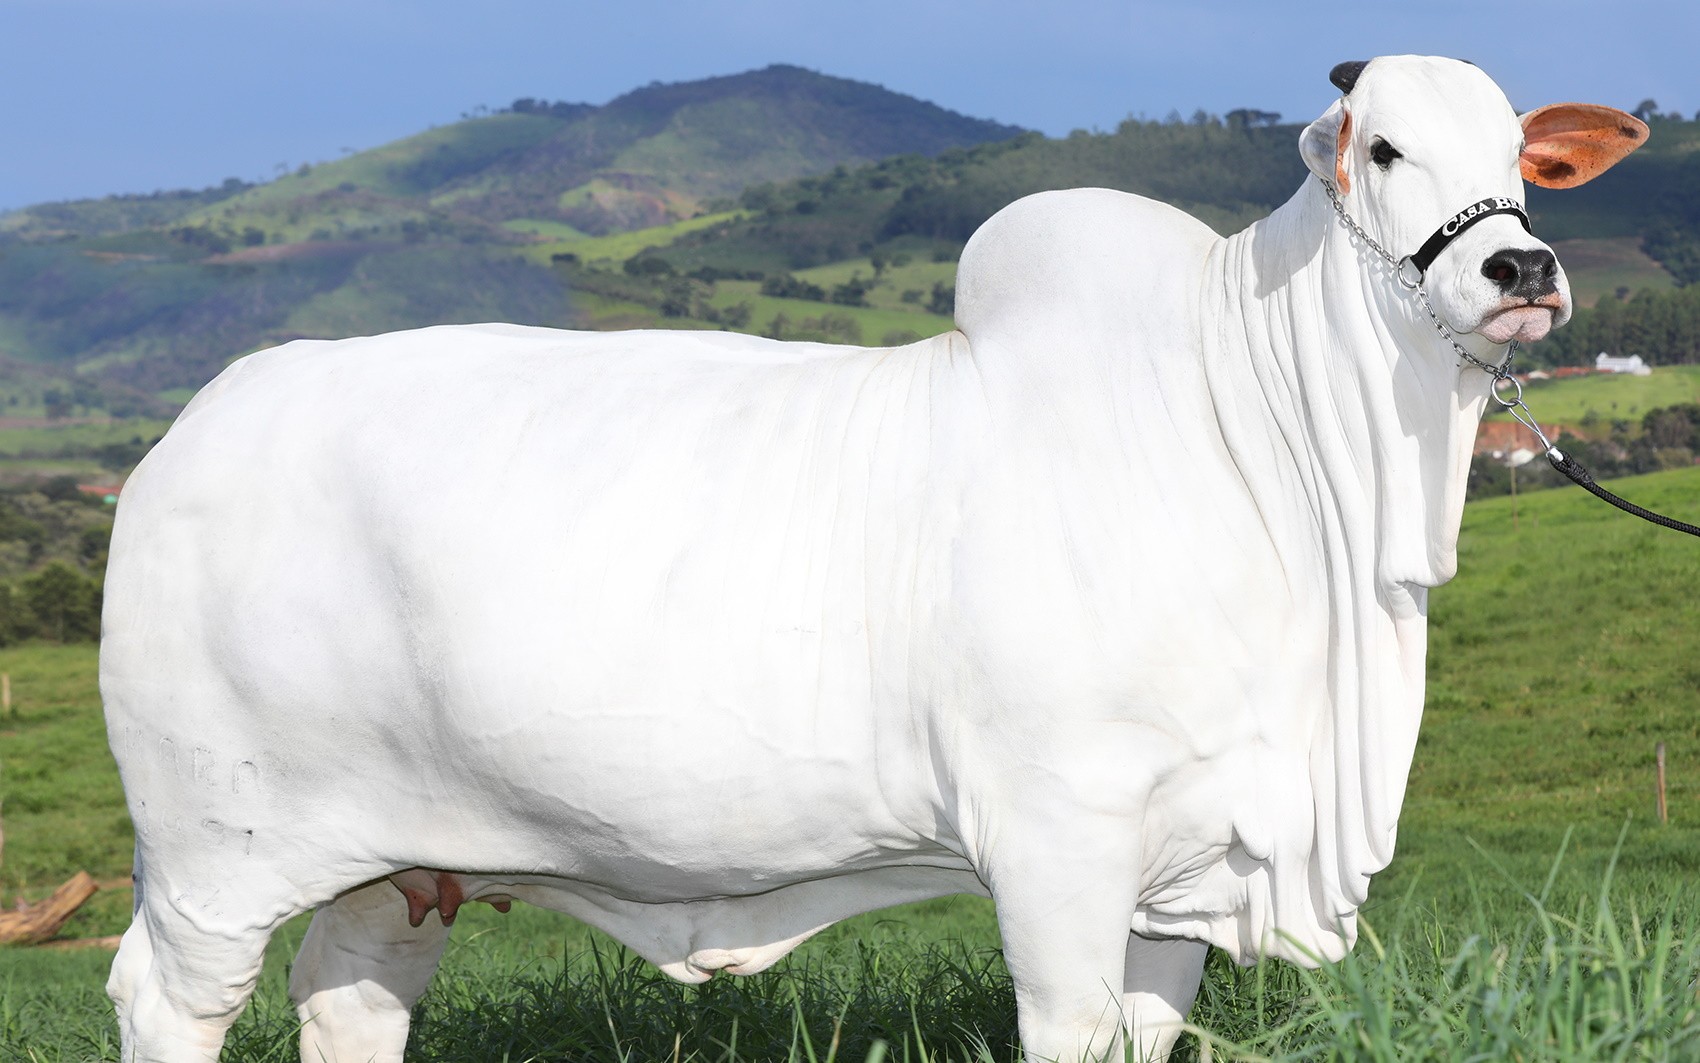 Vaca nelore goiana avaliada em R$ 21 milhões tem recorde no Guinness como a fêmea bovina mais cara do mundo